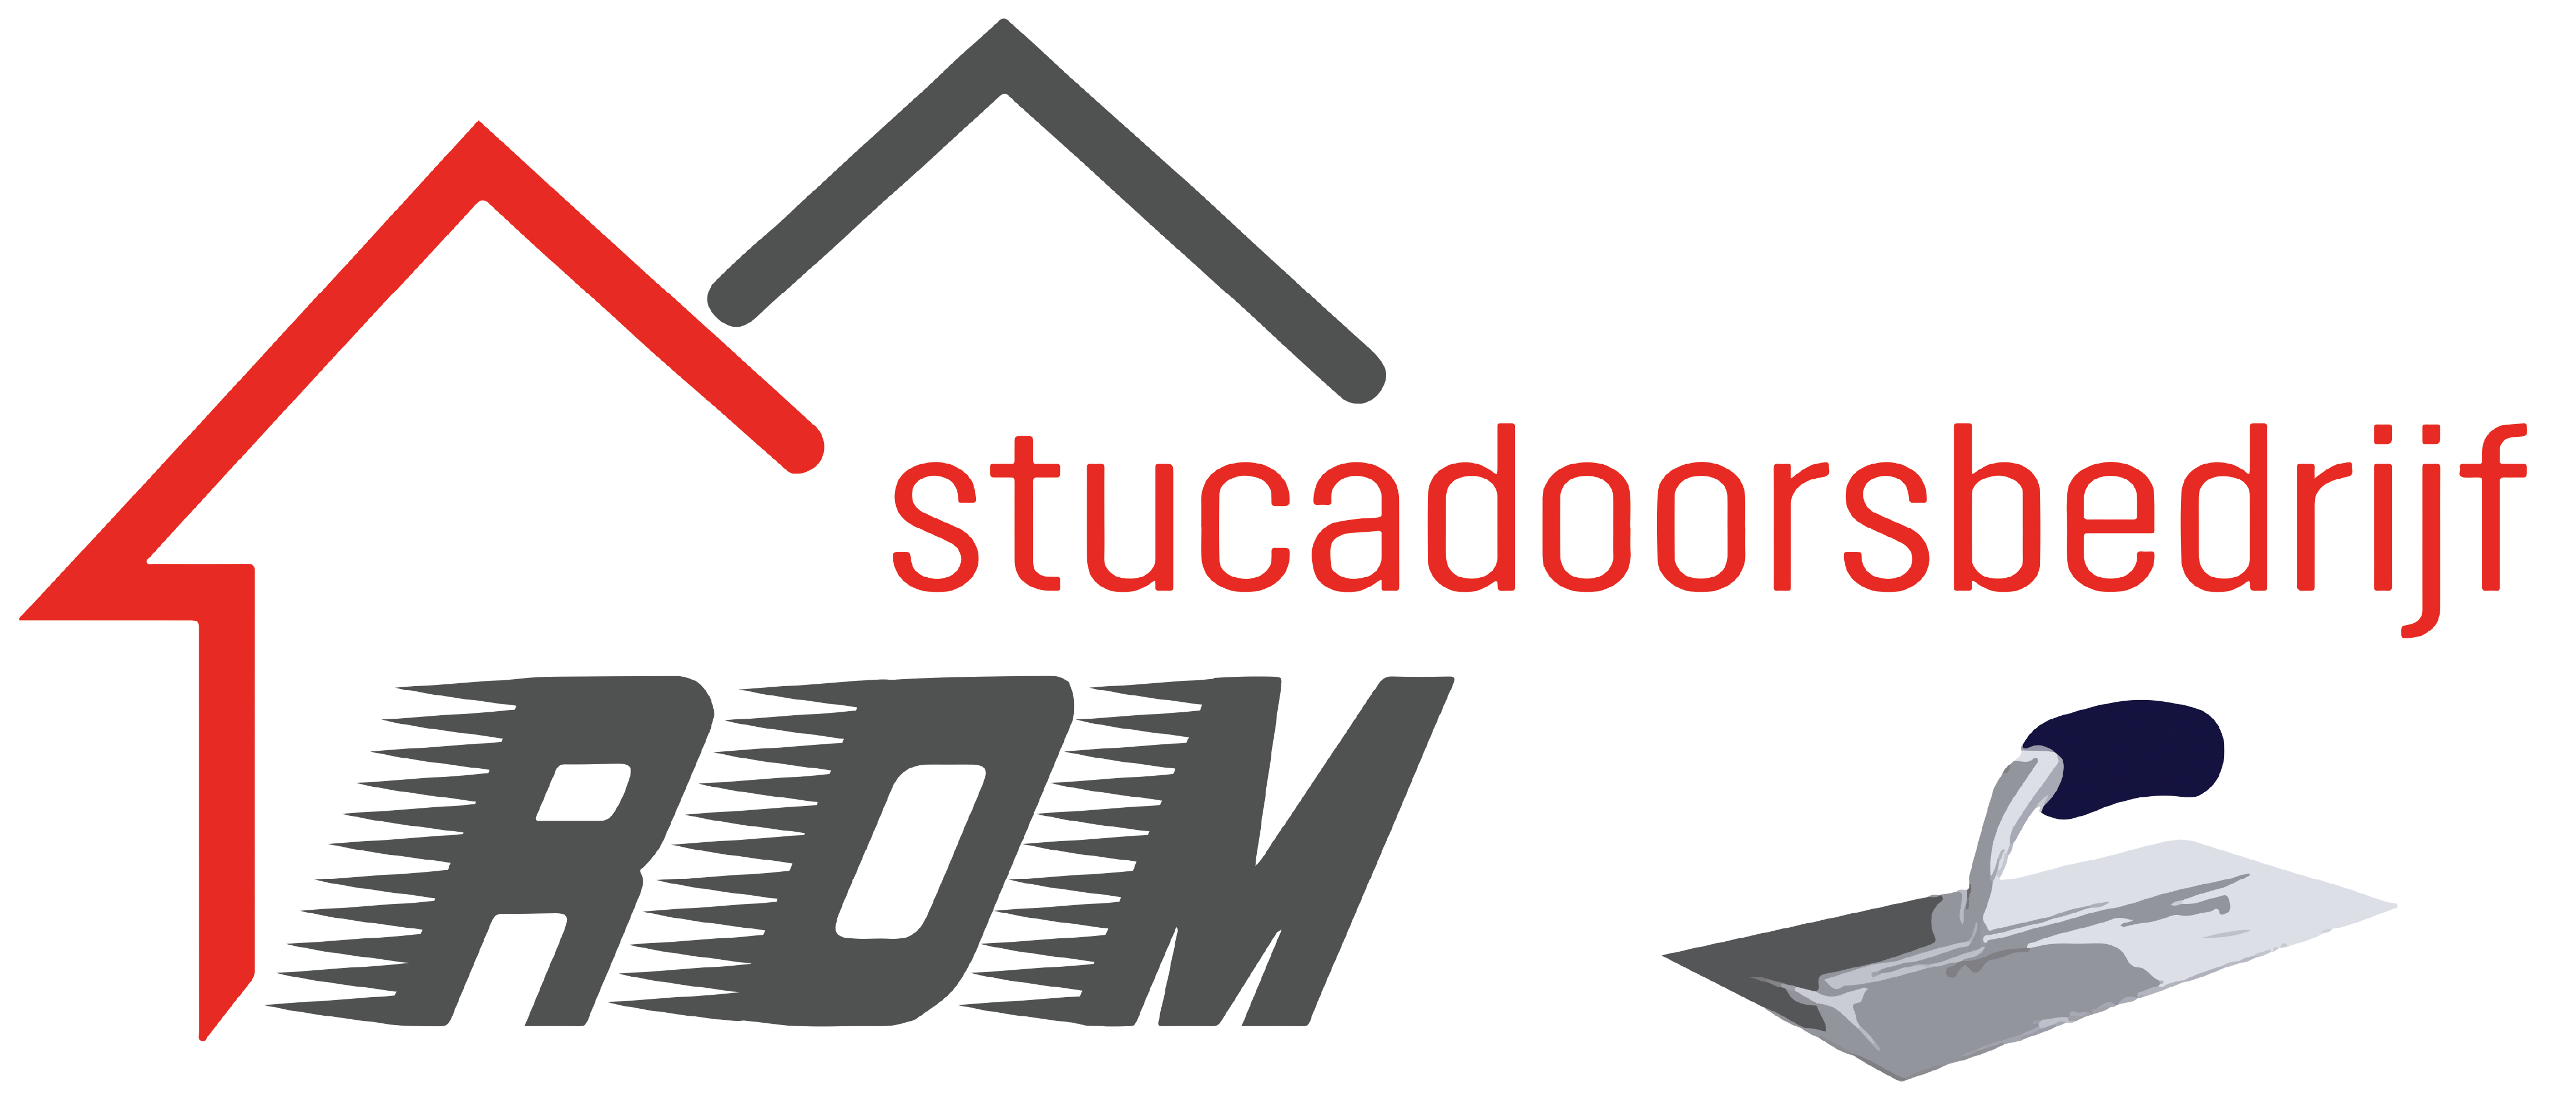 Rom Stucadoorsbedrijf Logo